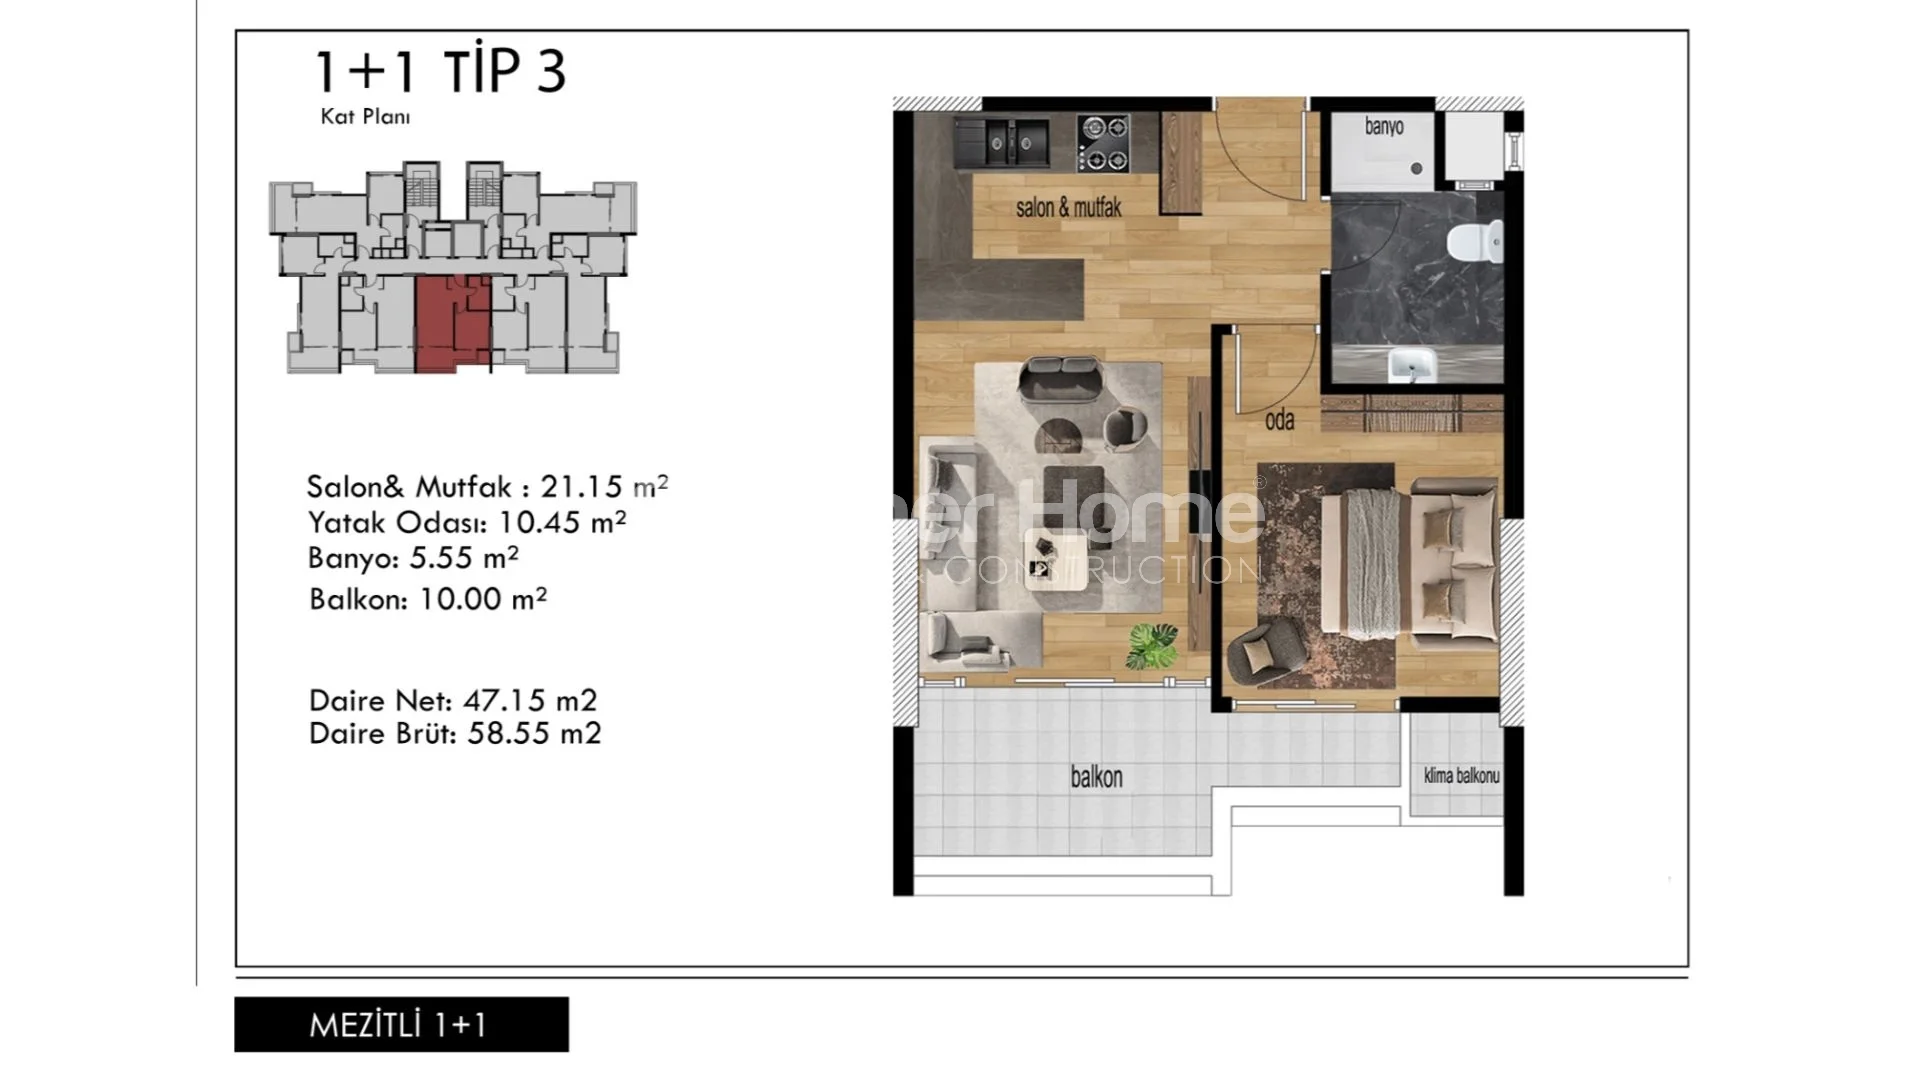 Prekrasni apartmani modernog dizajna u Mezitli, Mersin plan - 27